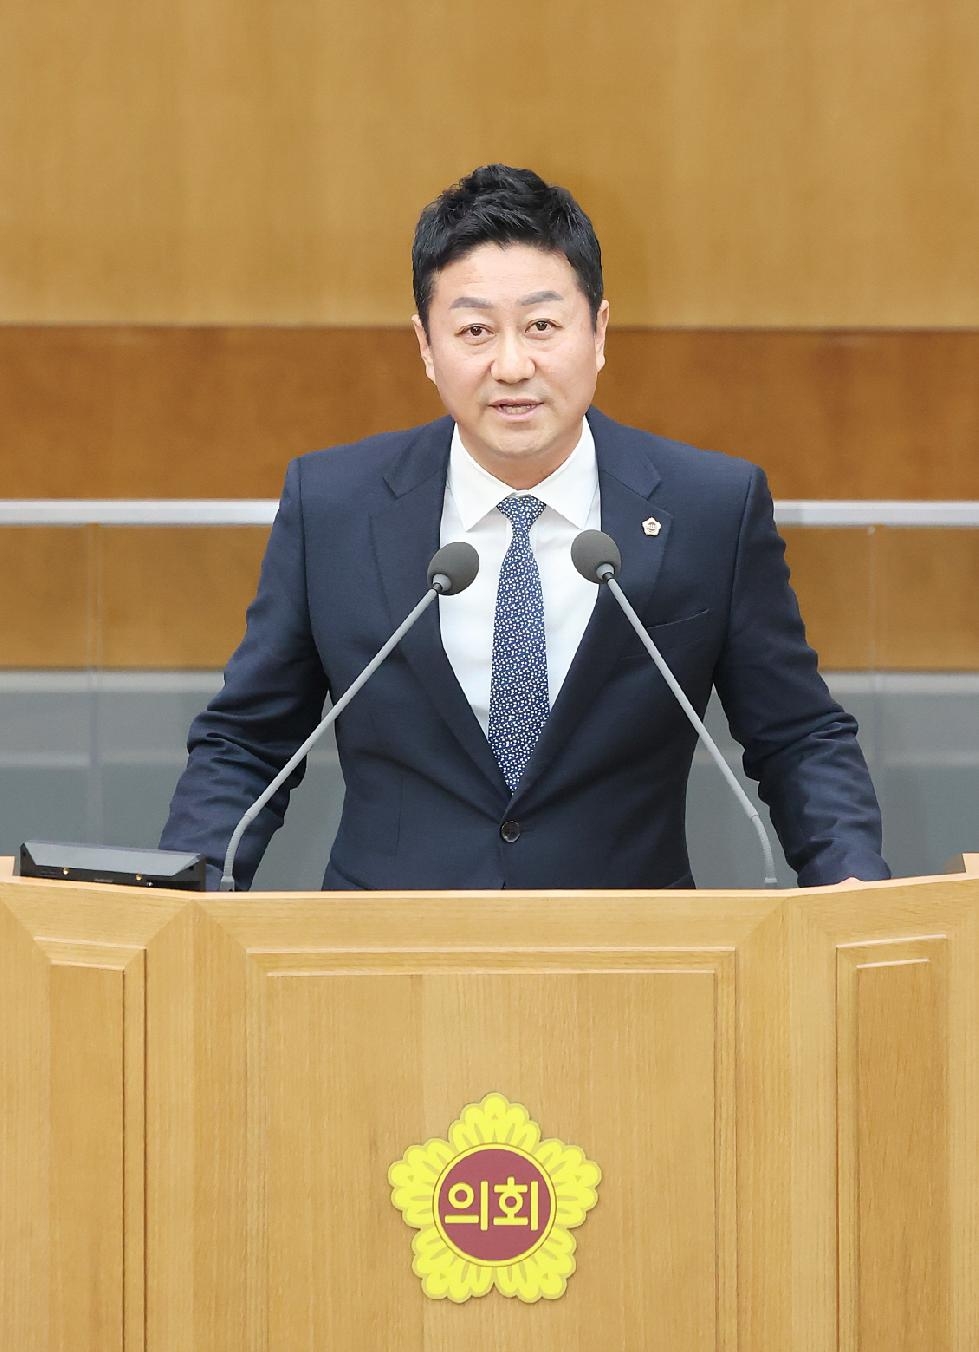 경기도의회 김진경 의원, 경기도형 여성폭력 통합지원체계 마련 촉구